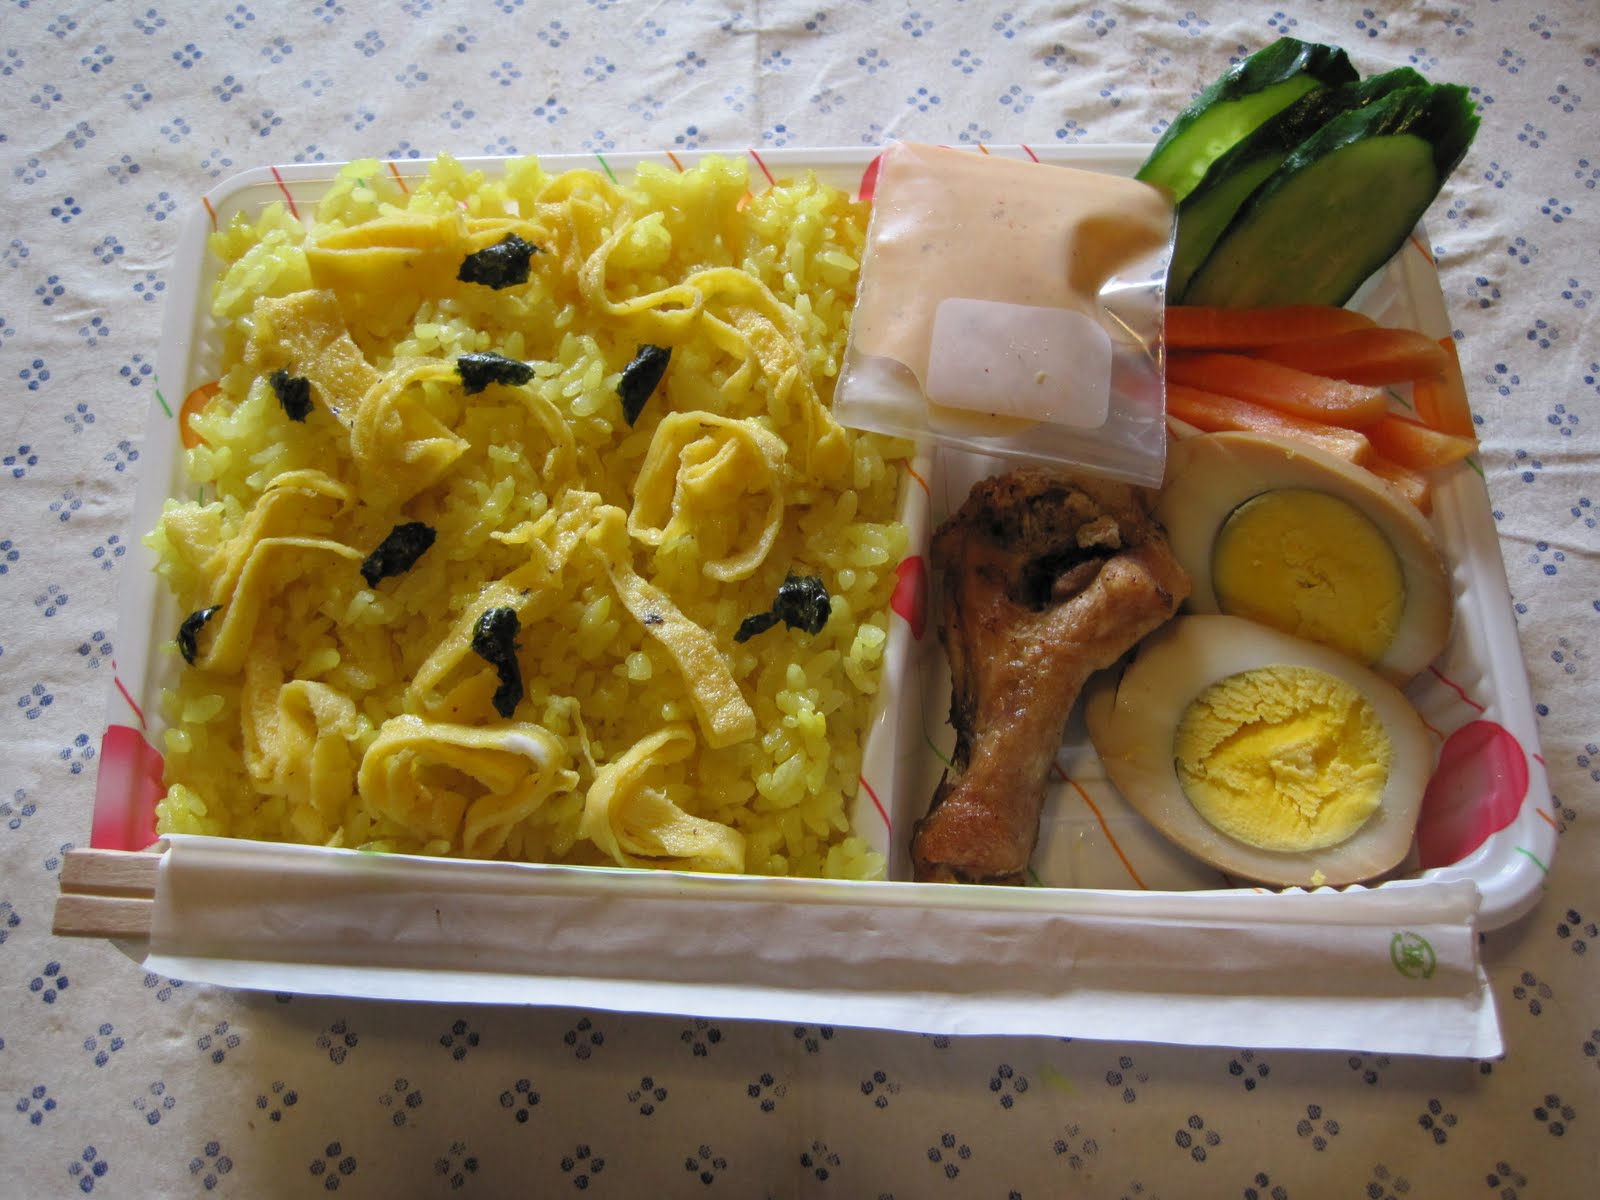 Warteg Saginuma: Nasi kuning, ayam goreng, telur semur